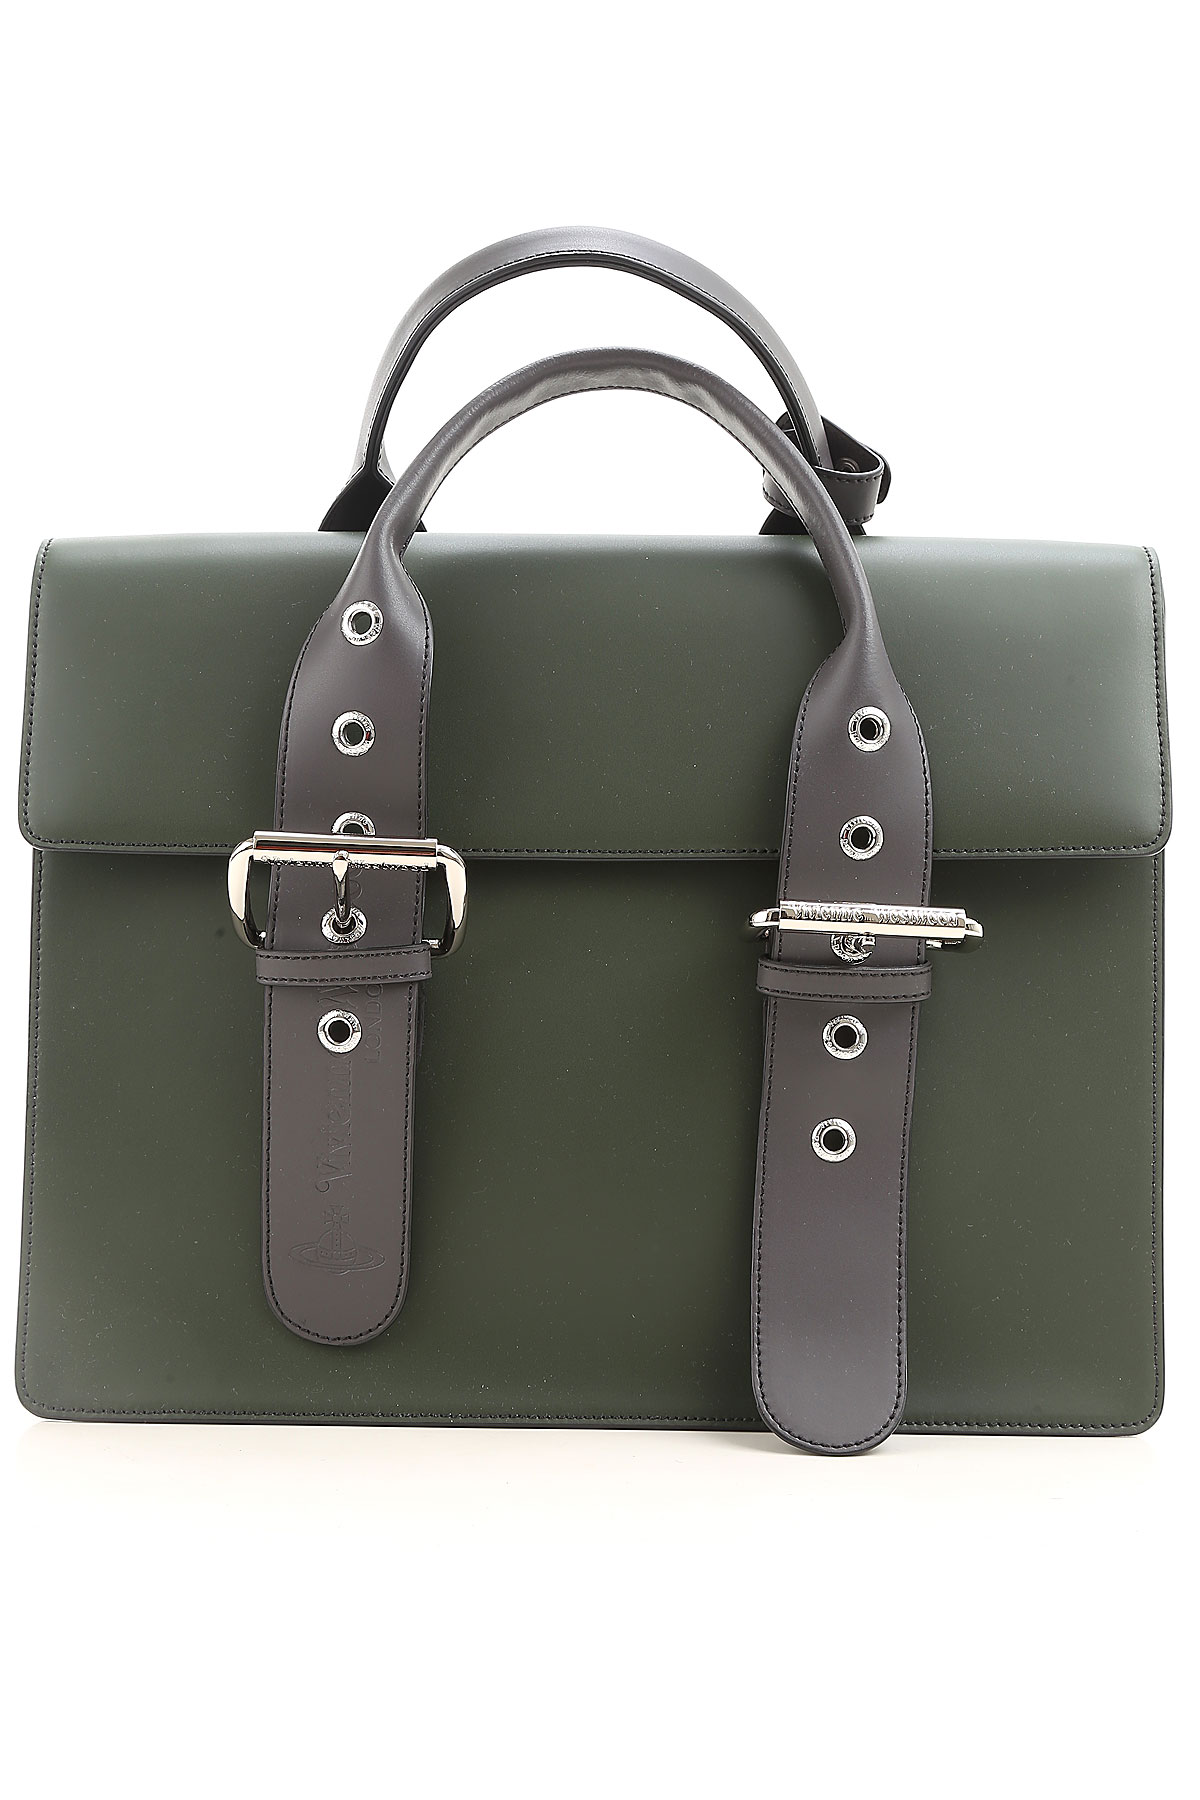 Vivienne Westwood Handbags, Vert foncé, Cuir, 2017